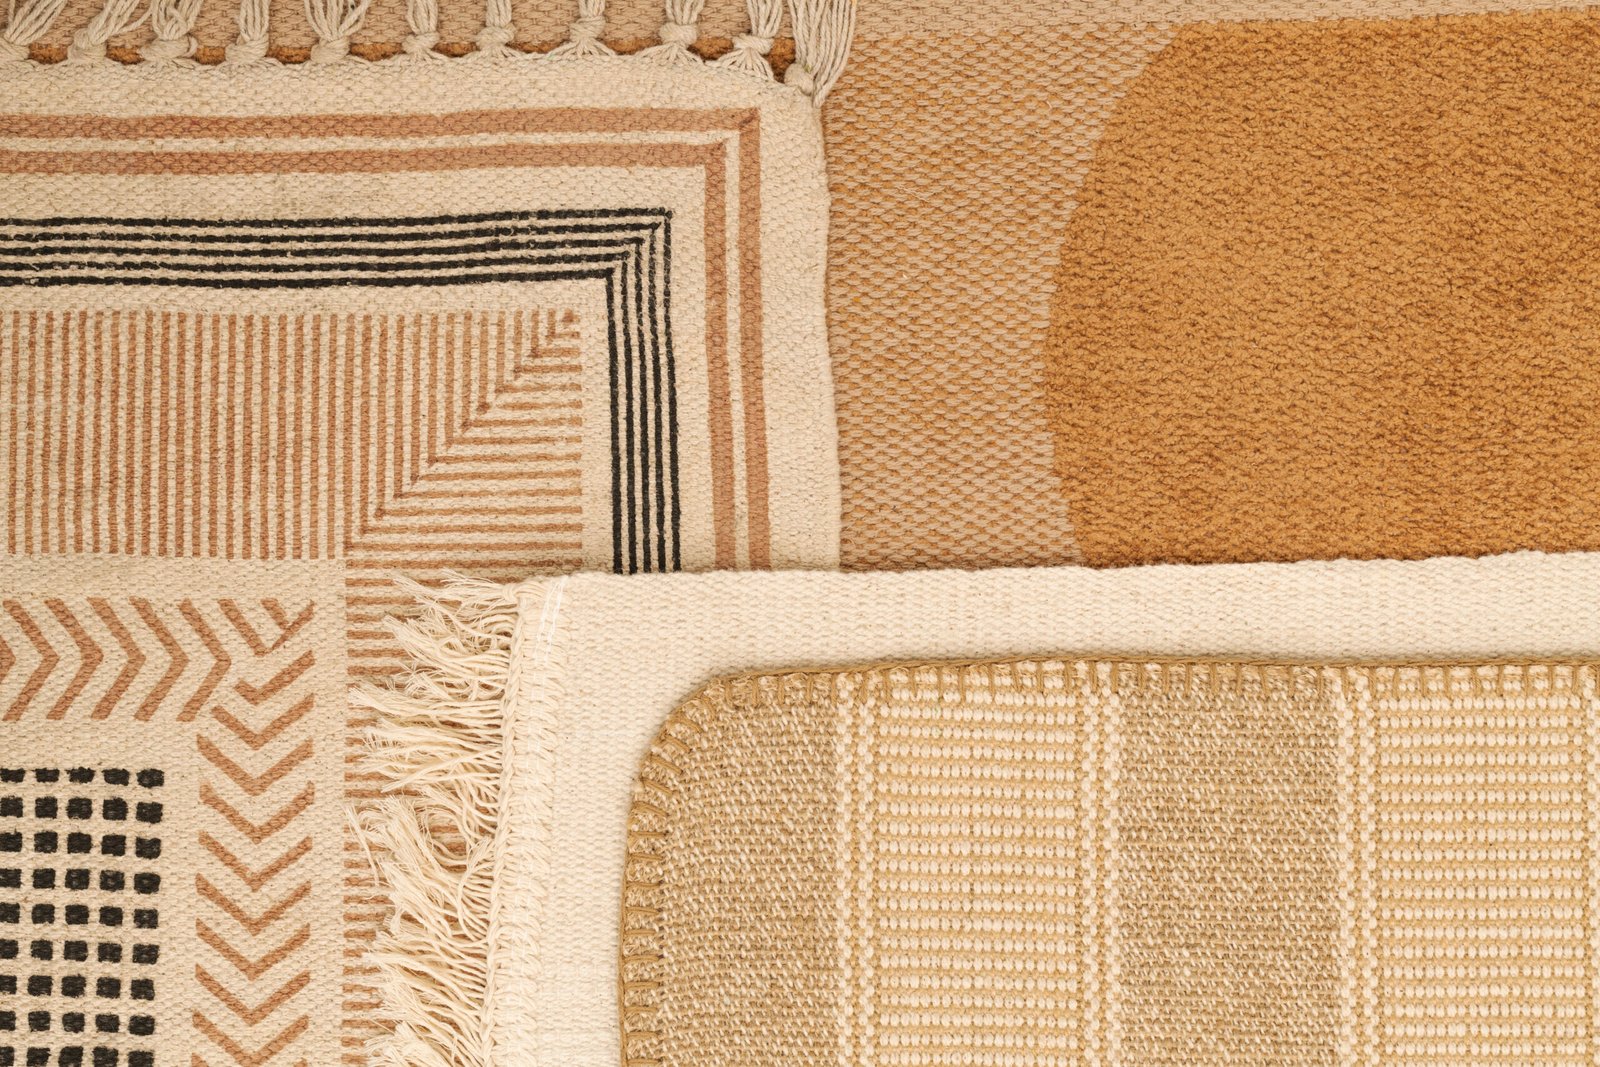 Boho rug, Aesthetic textile background, ethnic pattern.